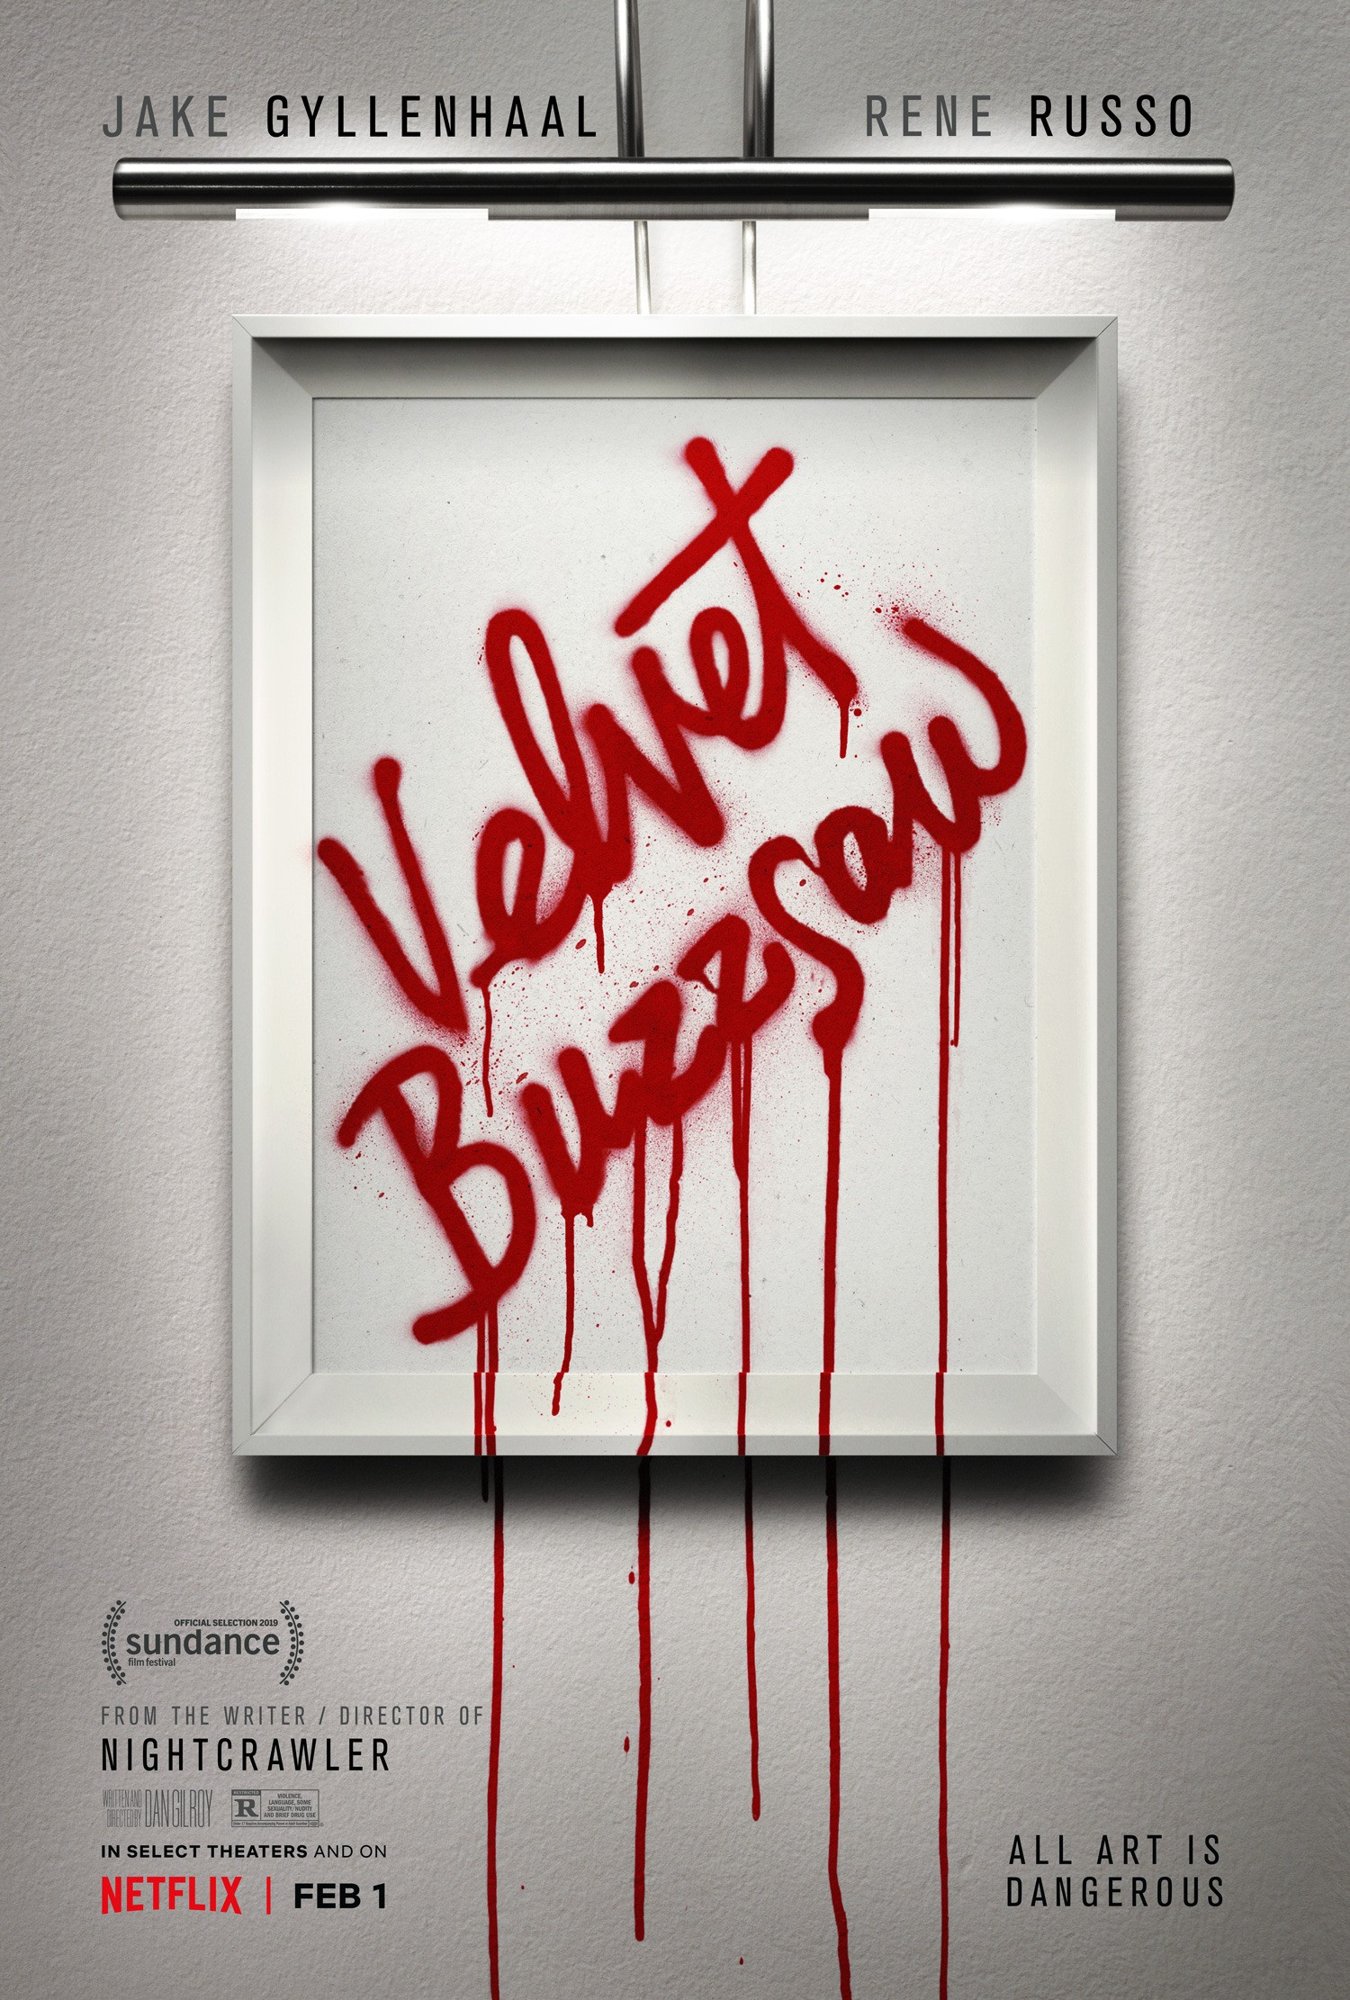 Poster of Netflix's Velvet Buzzsaw (2019)